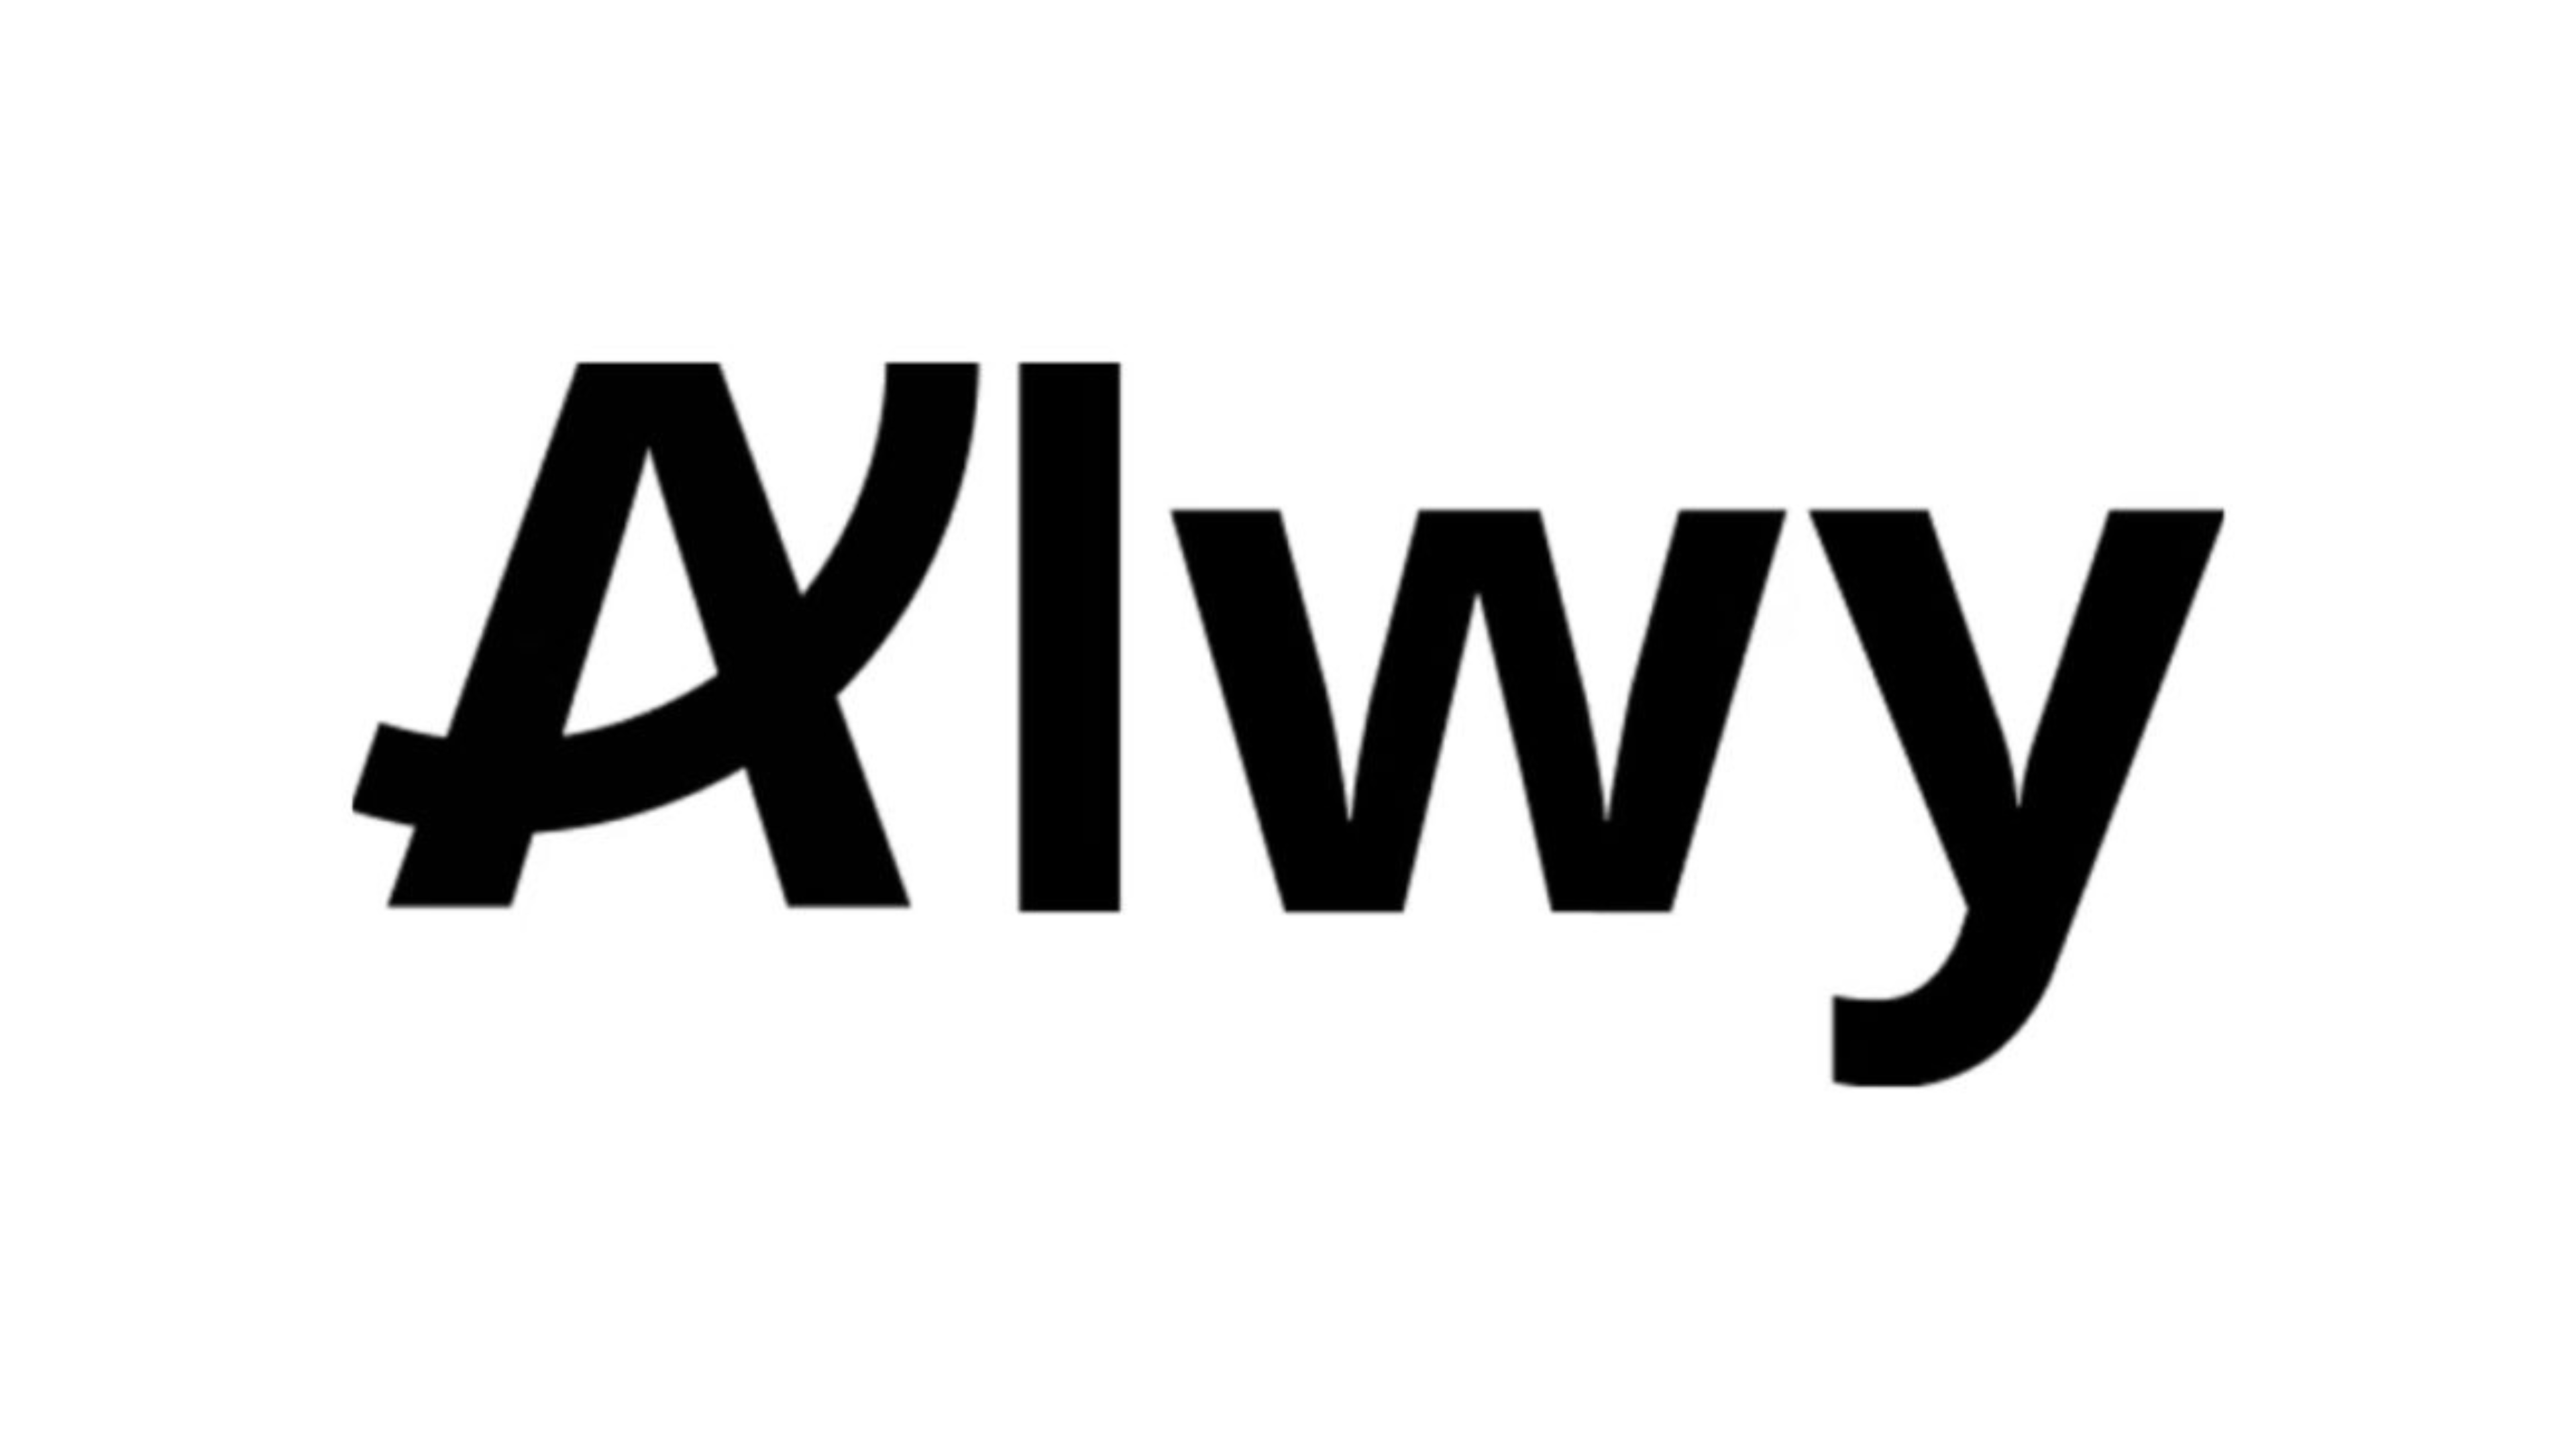 Alwy logotype